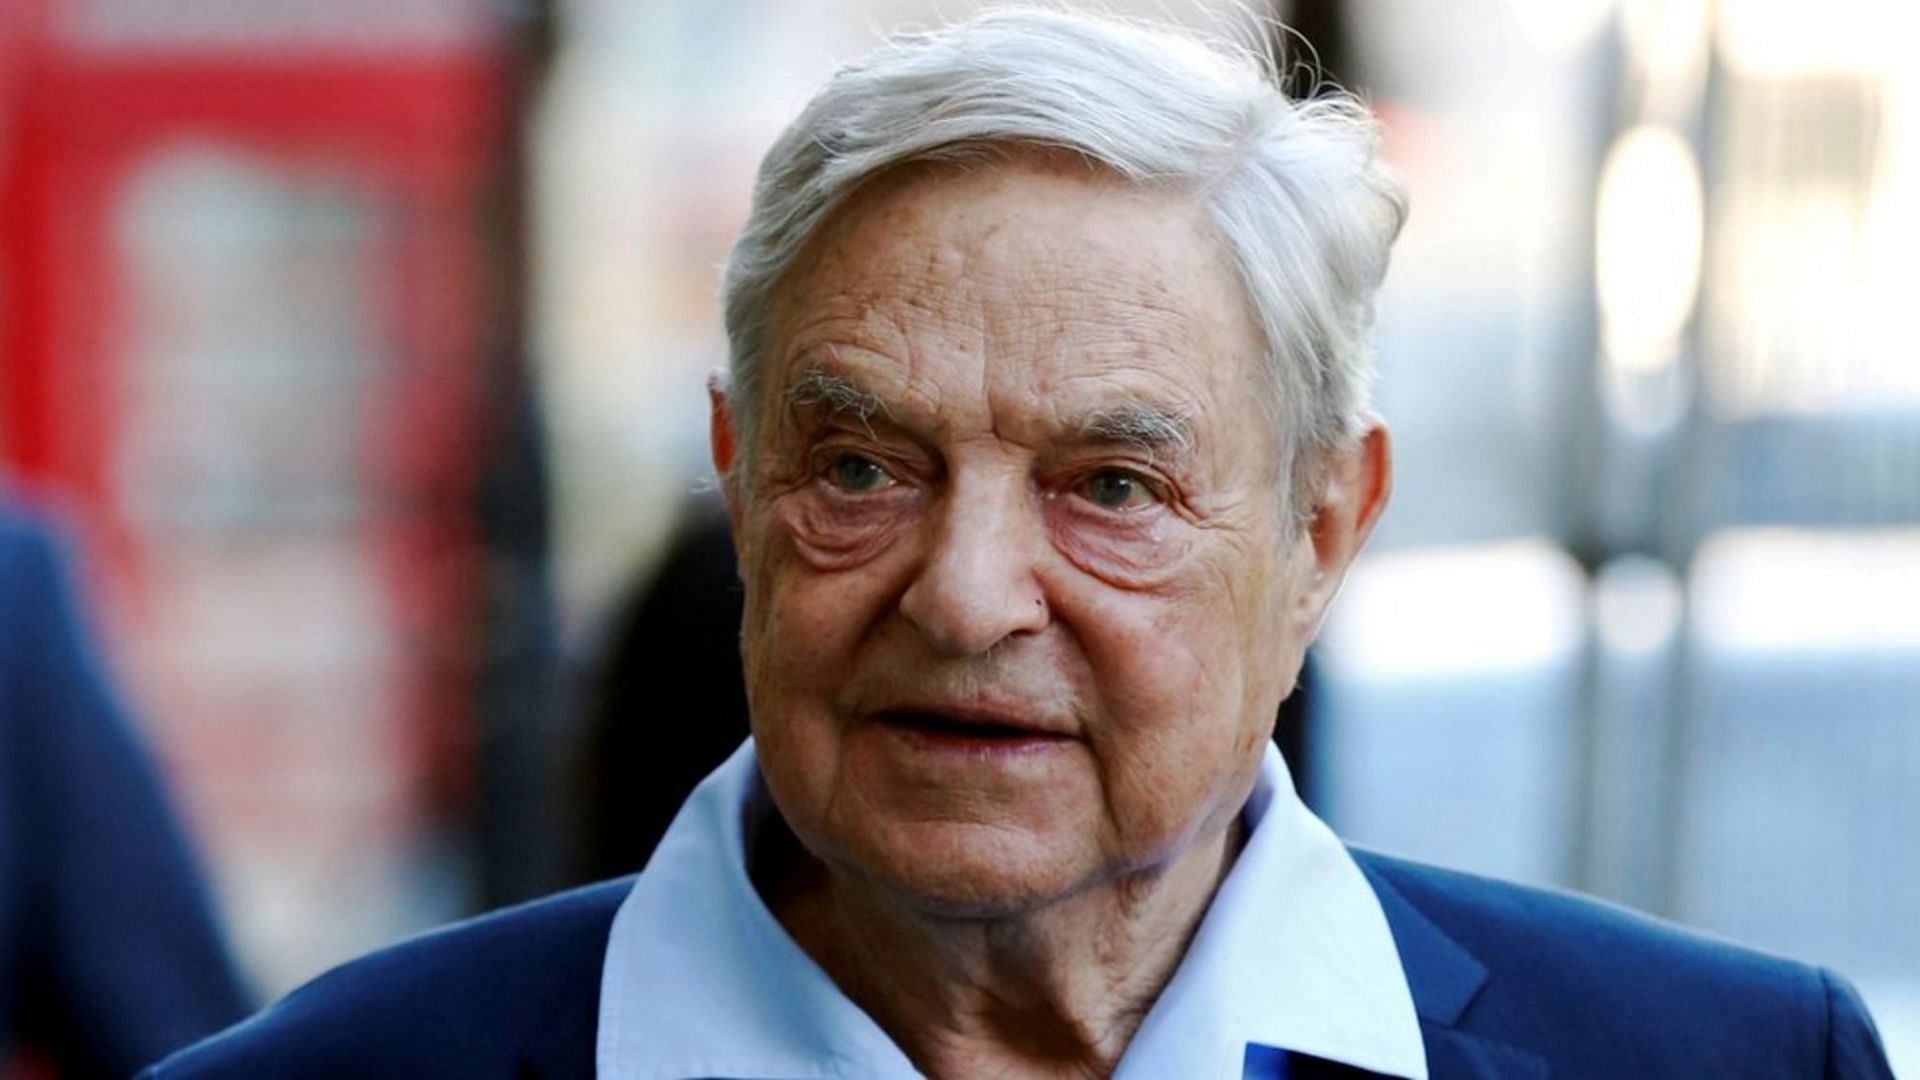 George Soros death hoax debunked (Image via AP)